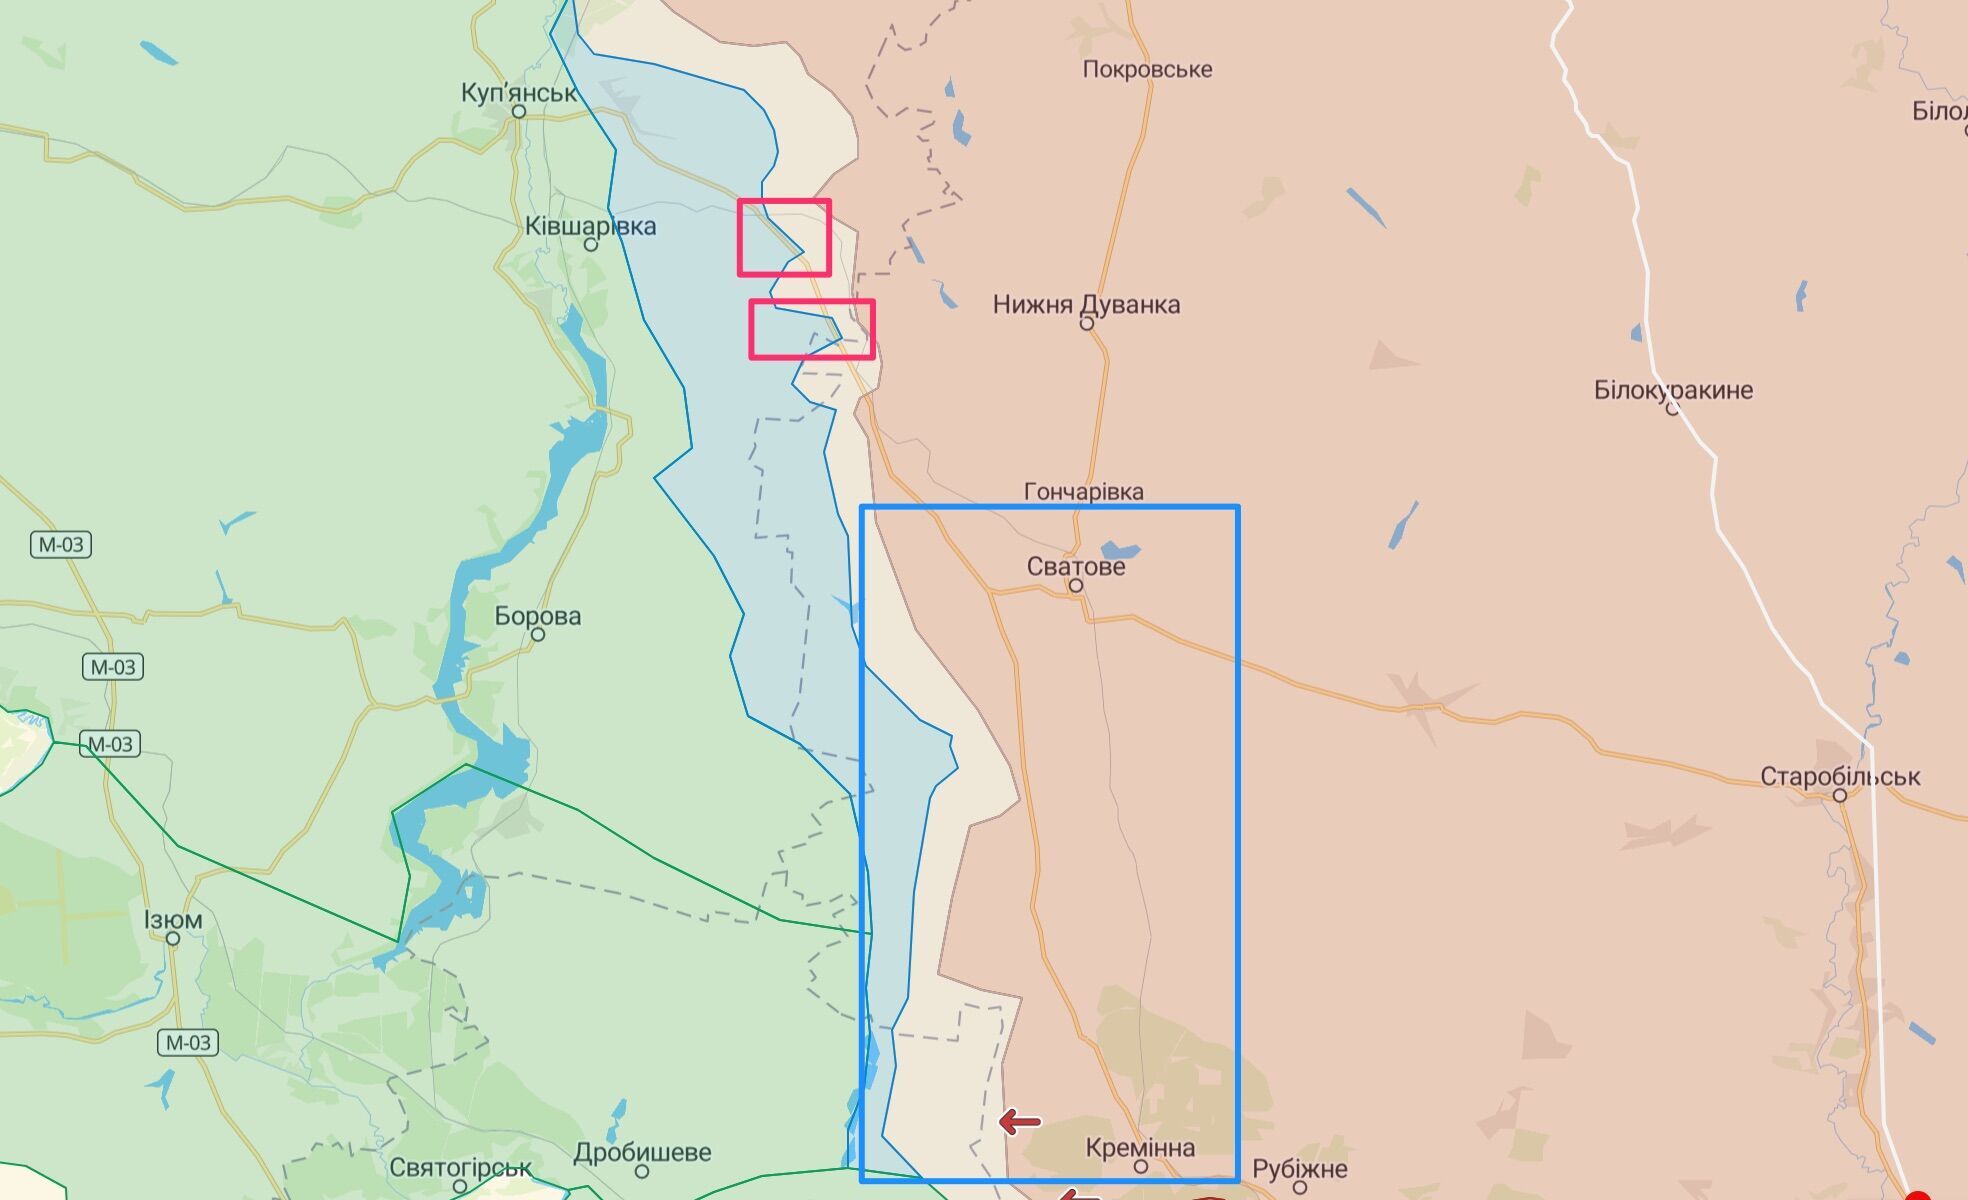 Трасса Р-66 перерезана в двух точках к северу от Сватового, а участок на Кременную простреливается